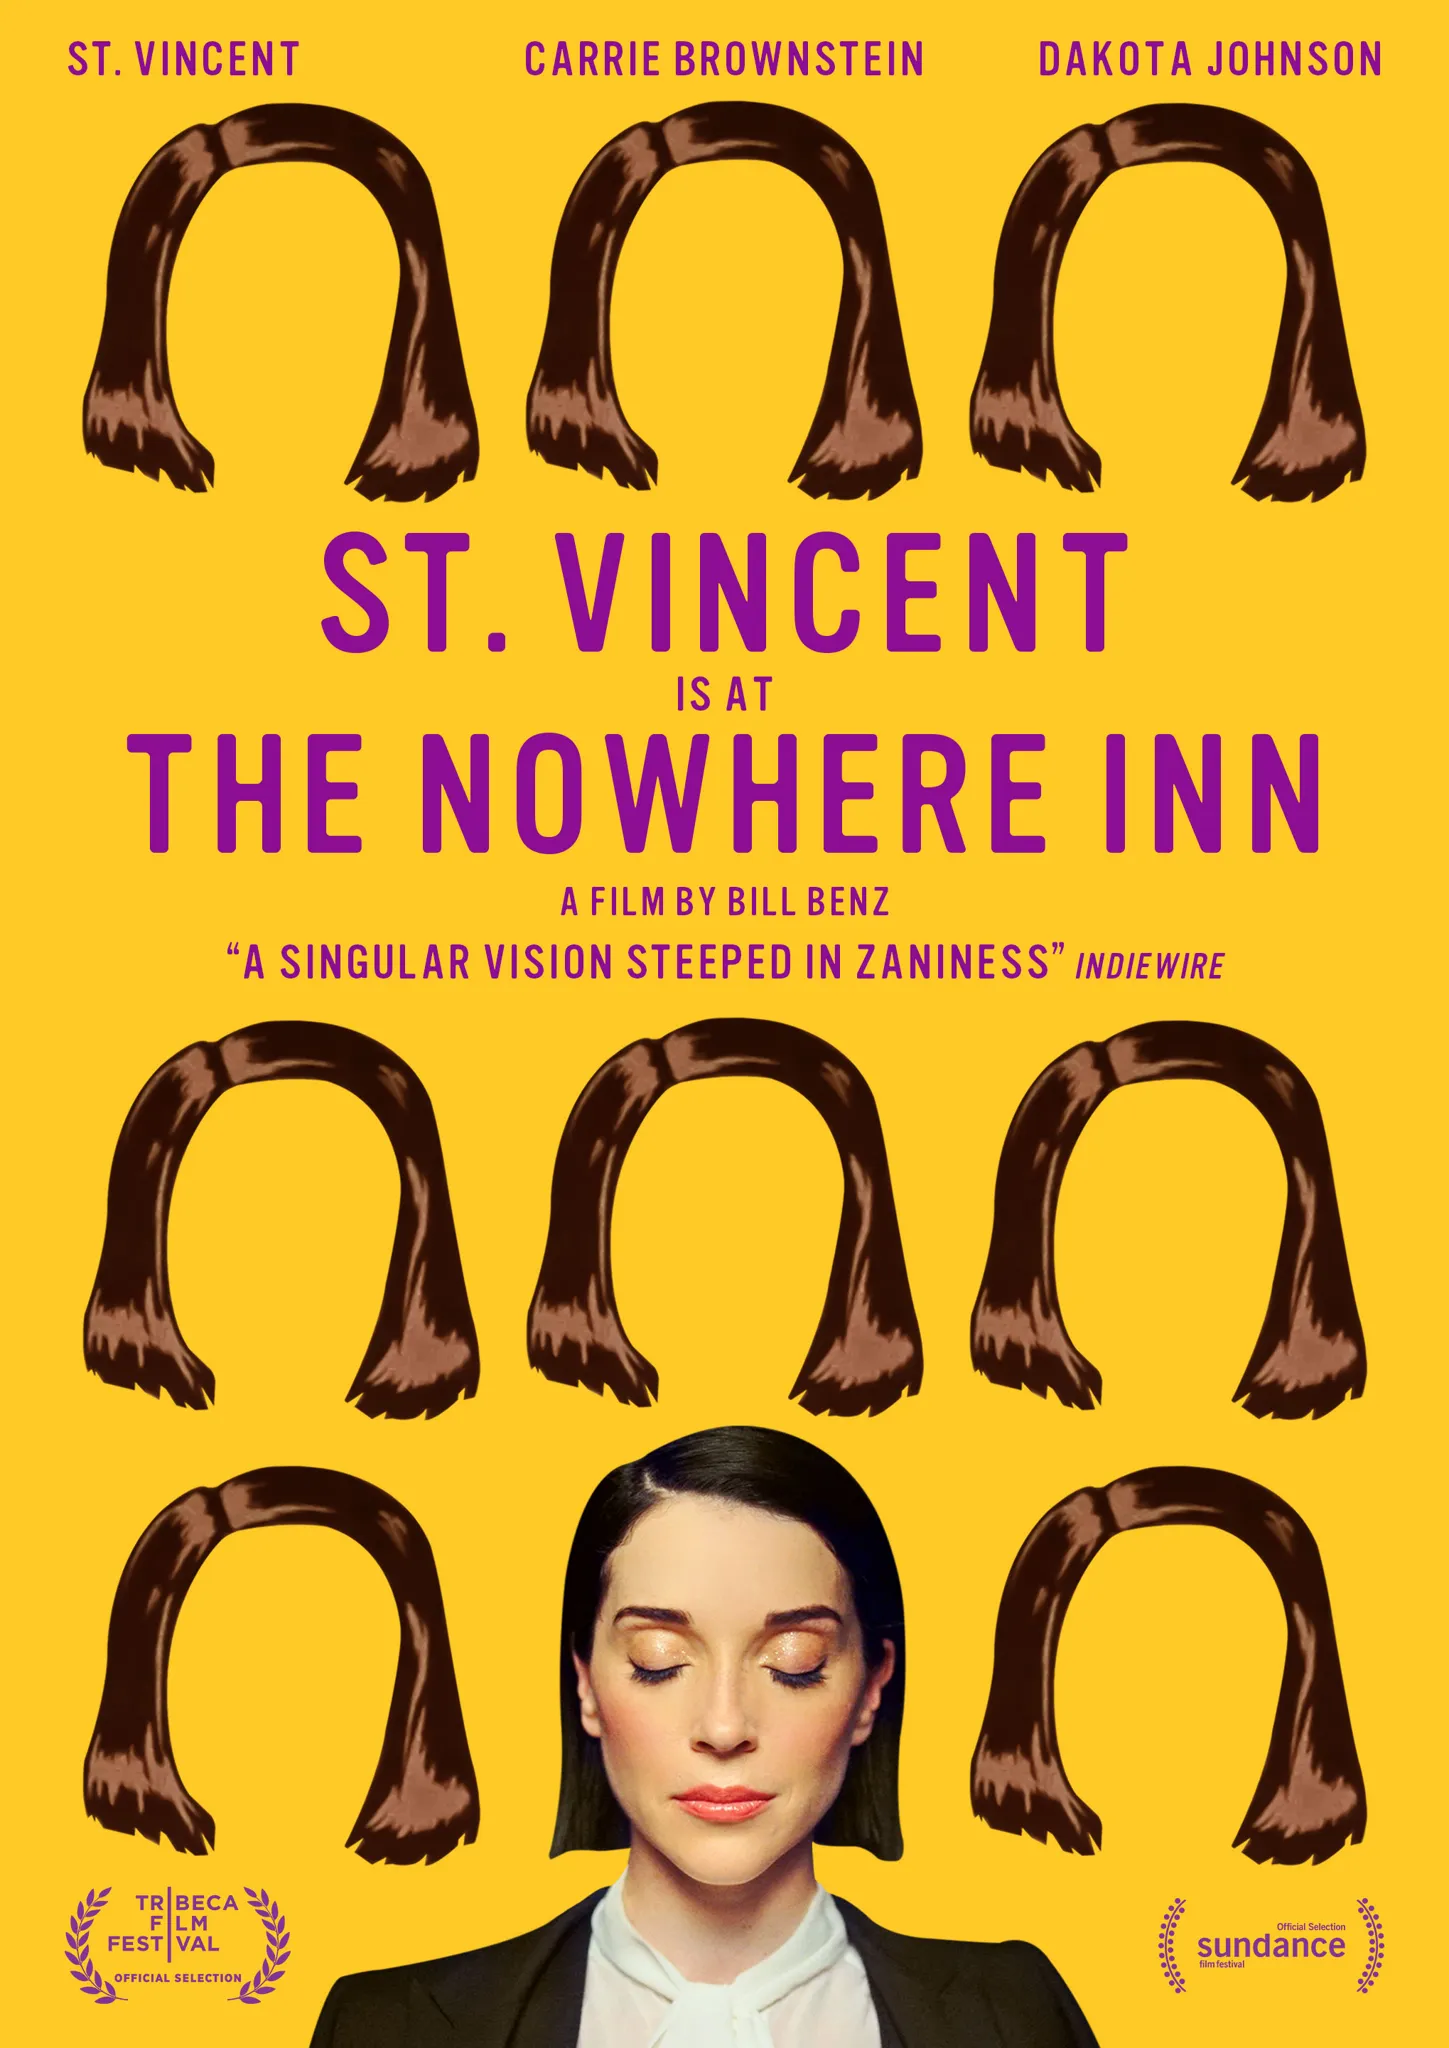 St. Vincent - The Nowhere Inn - DVD artwork